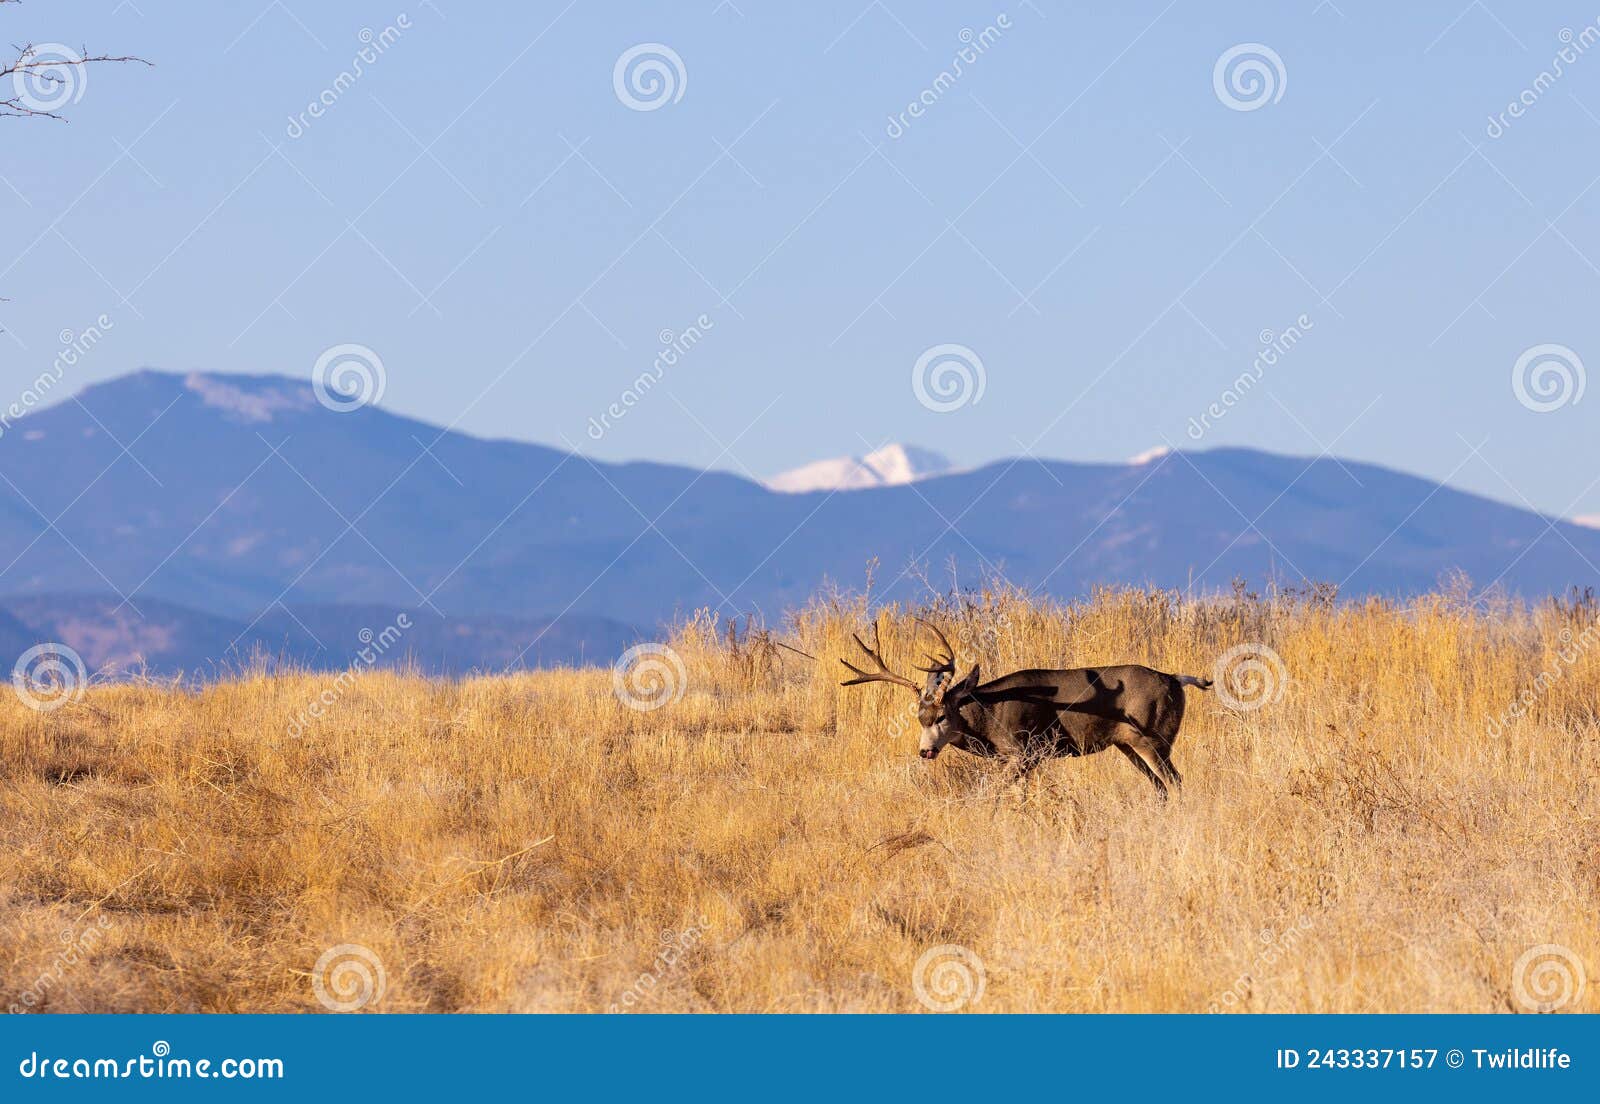 Mule Deer Buck in Fall in Colorado Stock Image - Image of fall, deer ...